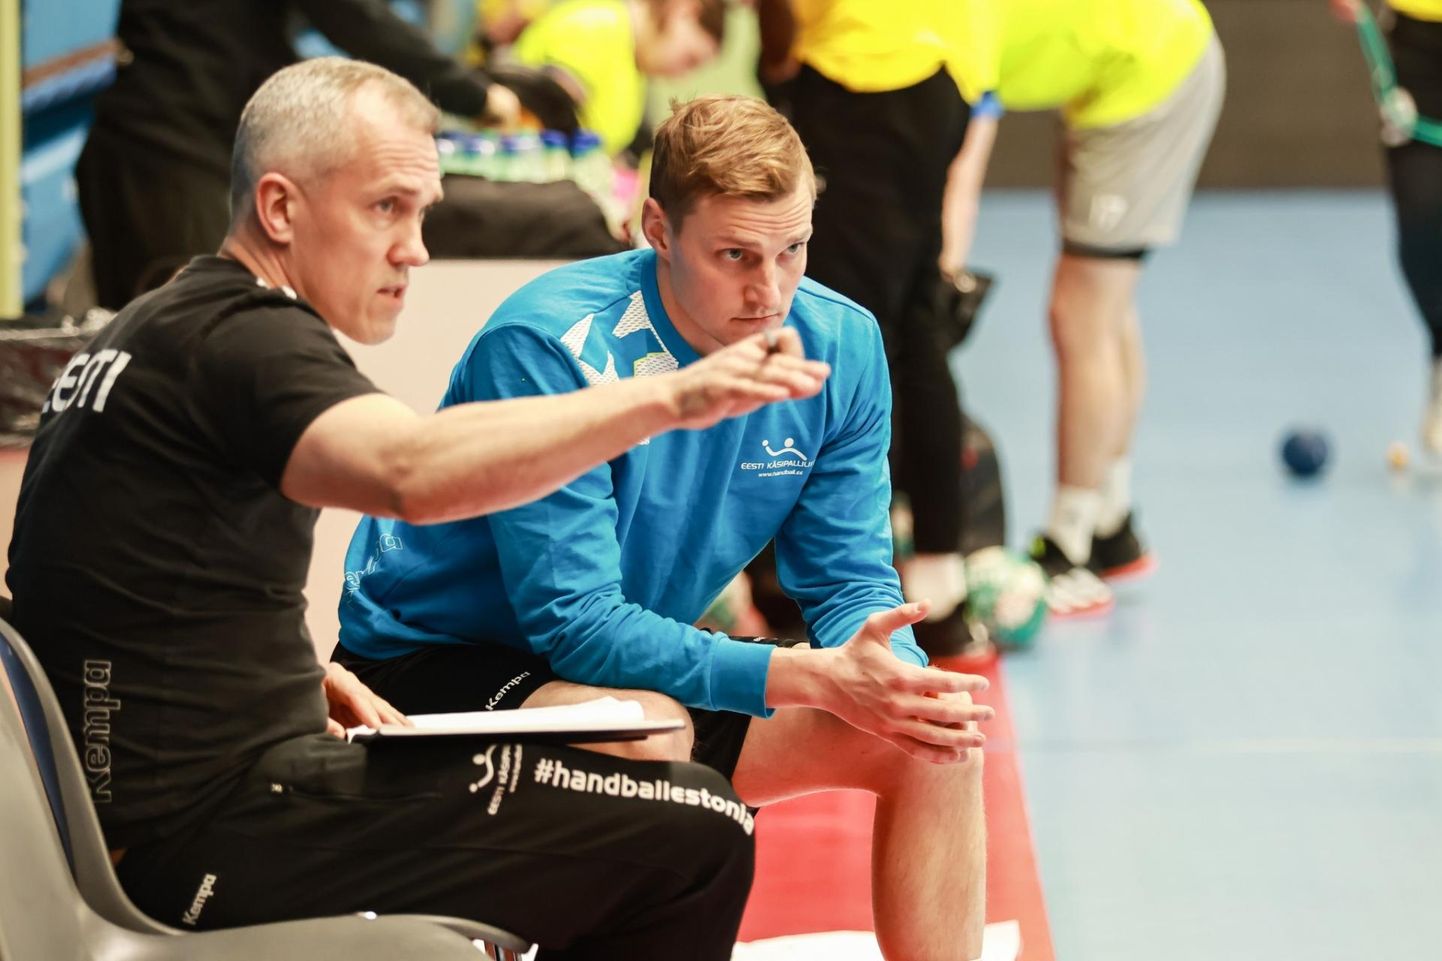 Eesti käsipallikoondis valmistub mänguks Ukraina koondisega Tallinnas treeninglaagris. Fotol on koondise peatreener Martin Noodla ja Viljandi HC kasvandik Karl Roosna, kes mängib Saksamaal.